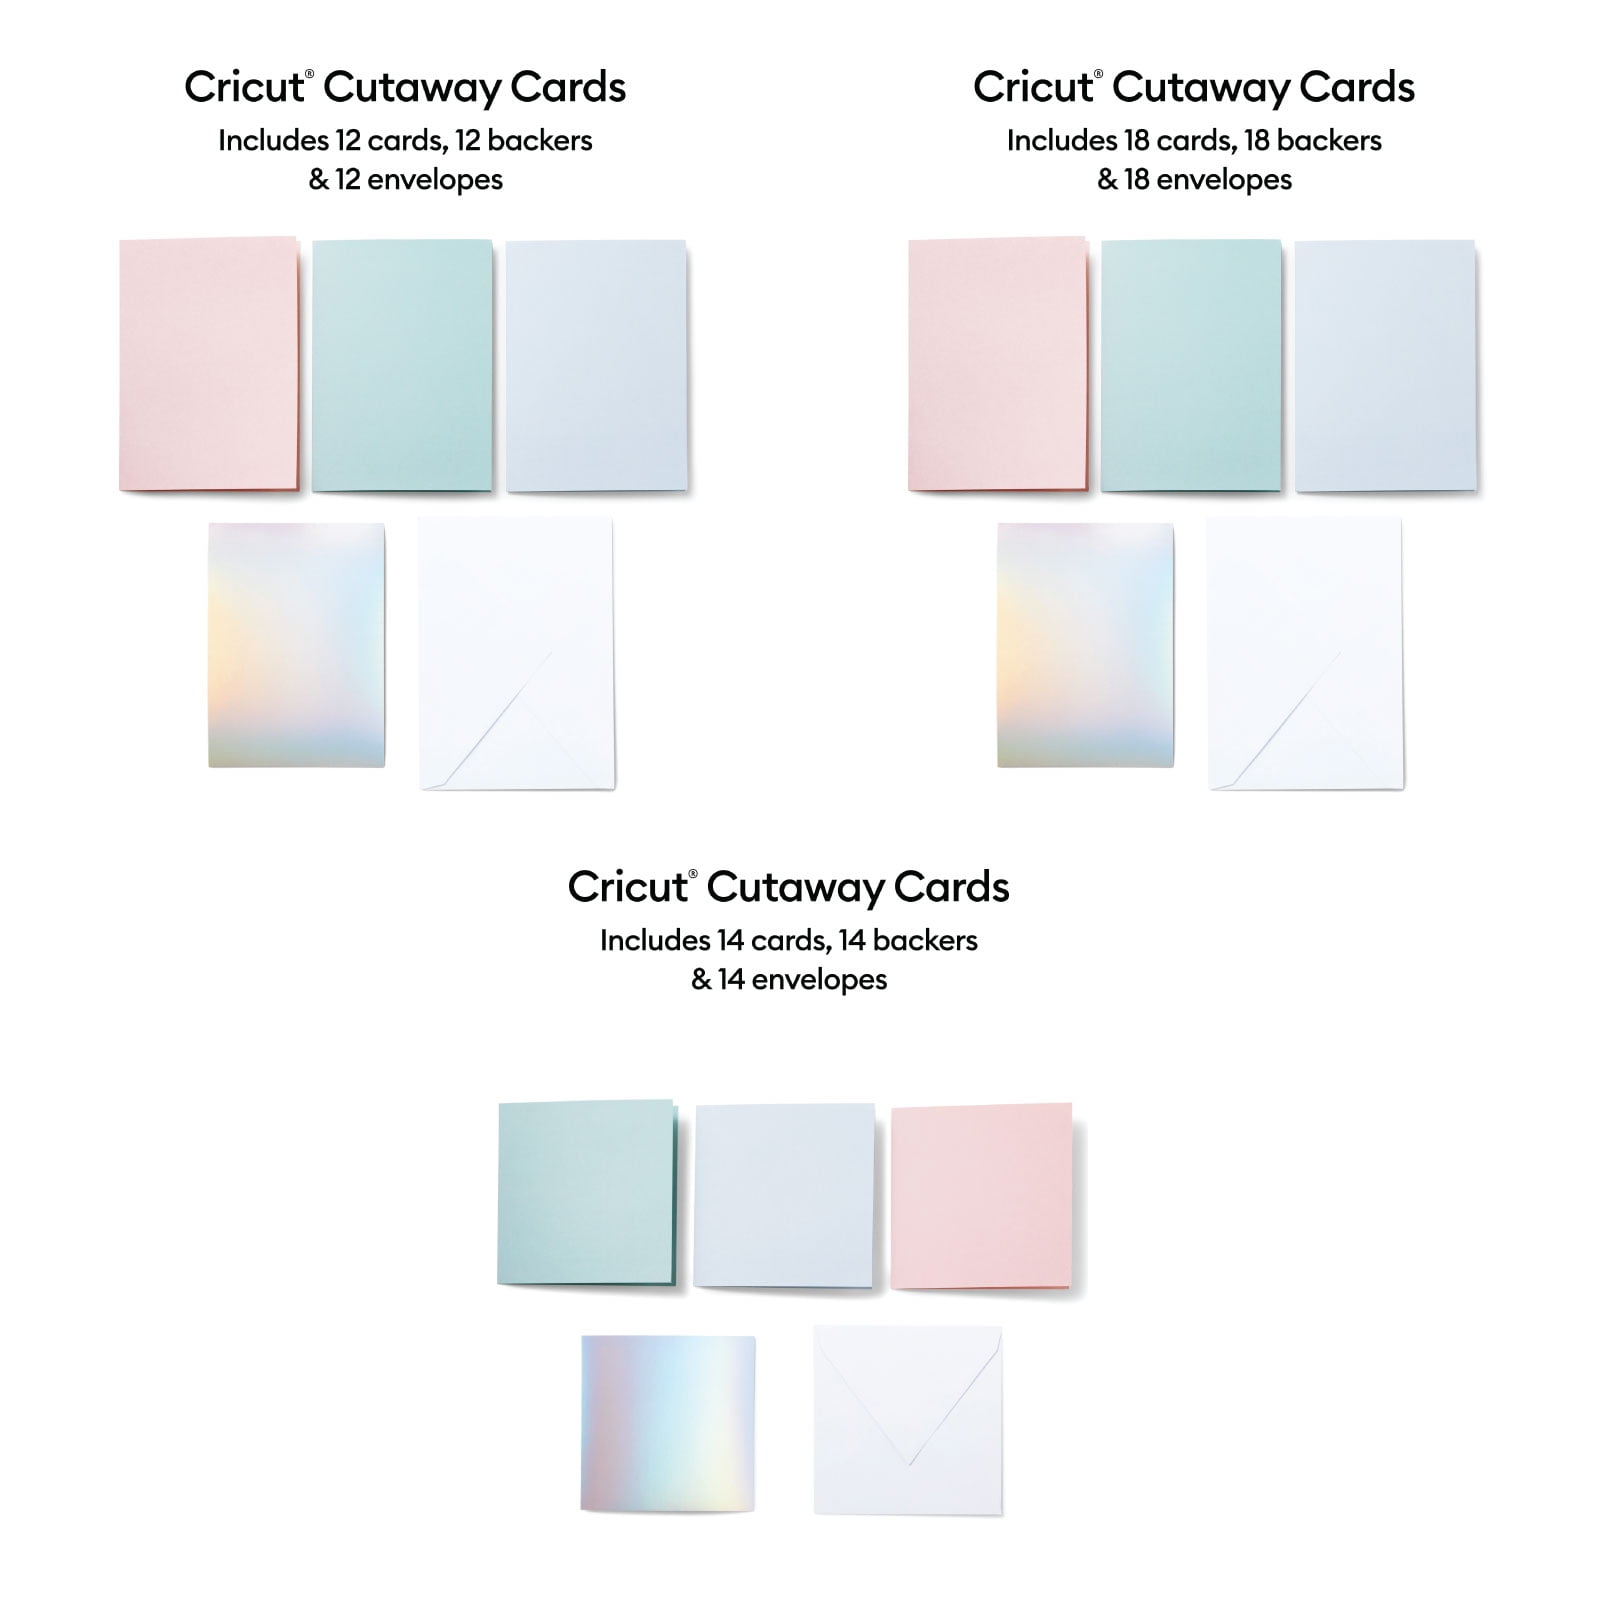 Cricut® Insert Cards, Princess Sampler - R40 (30 ct), 4.75 x 6.6